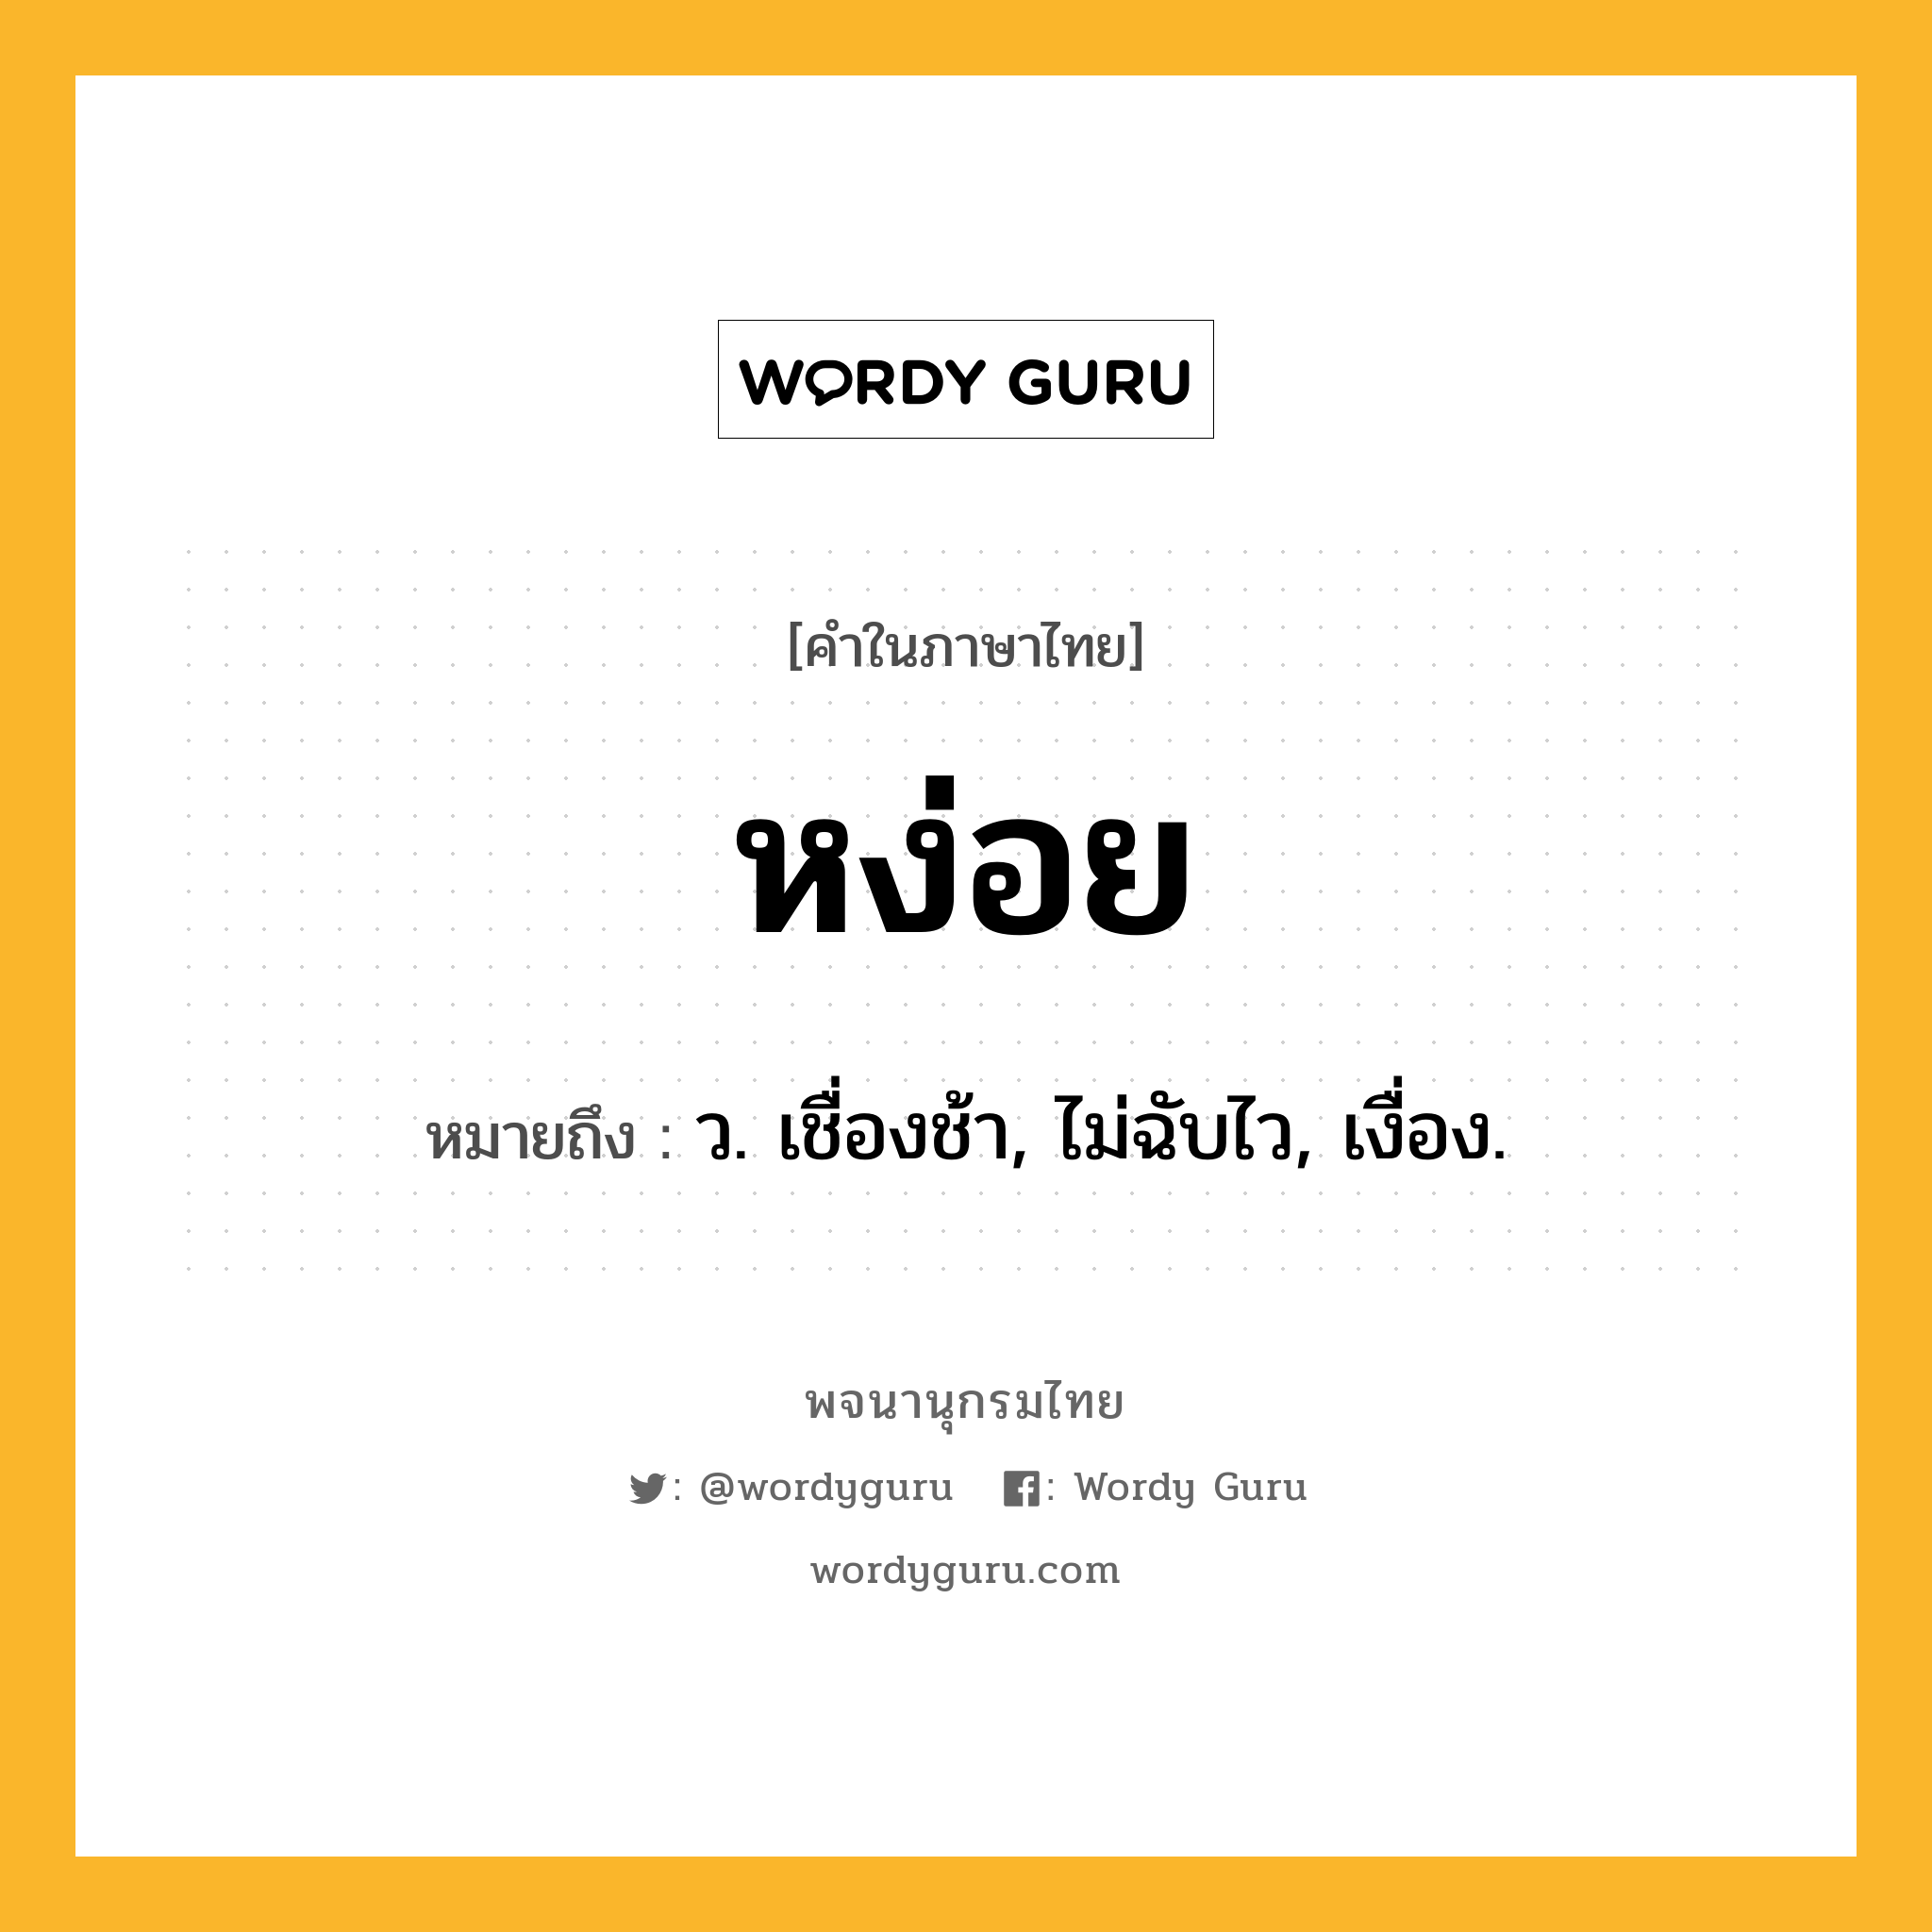 หง่อย ความหมาย หมายถึงอะไร?, คำในภาษาไทย หง่อย หมายถึง ว. เชื่องช้า, ไม่ฉับไว, เงื่อง.